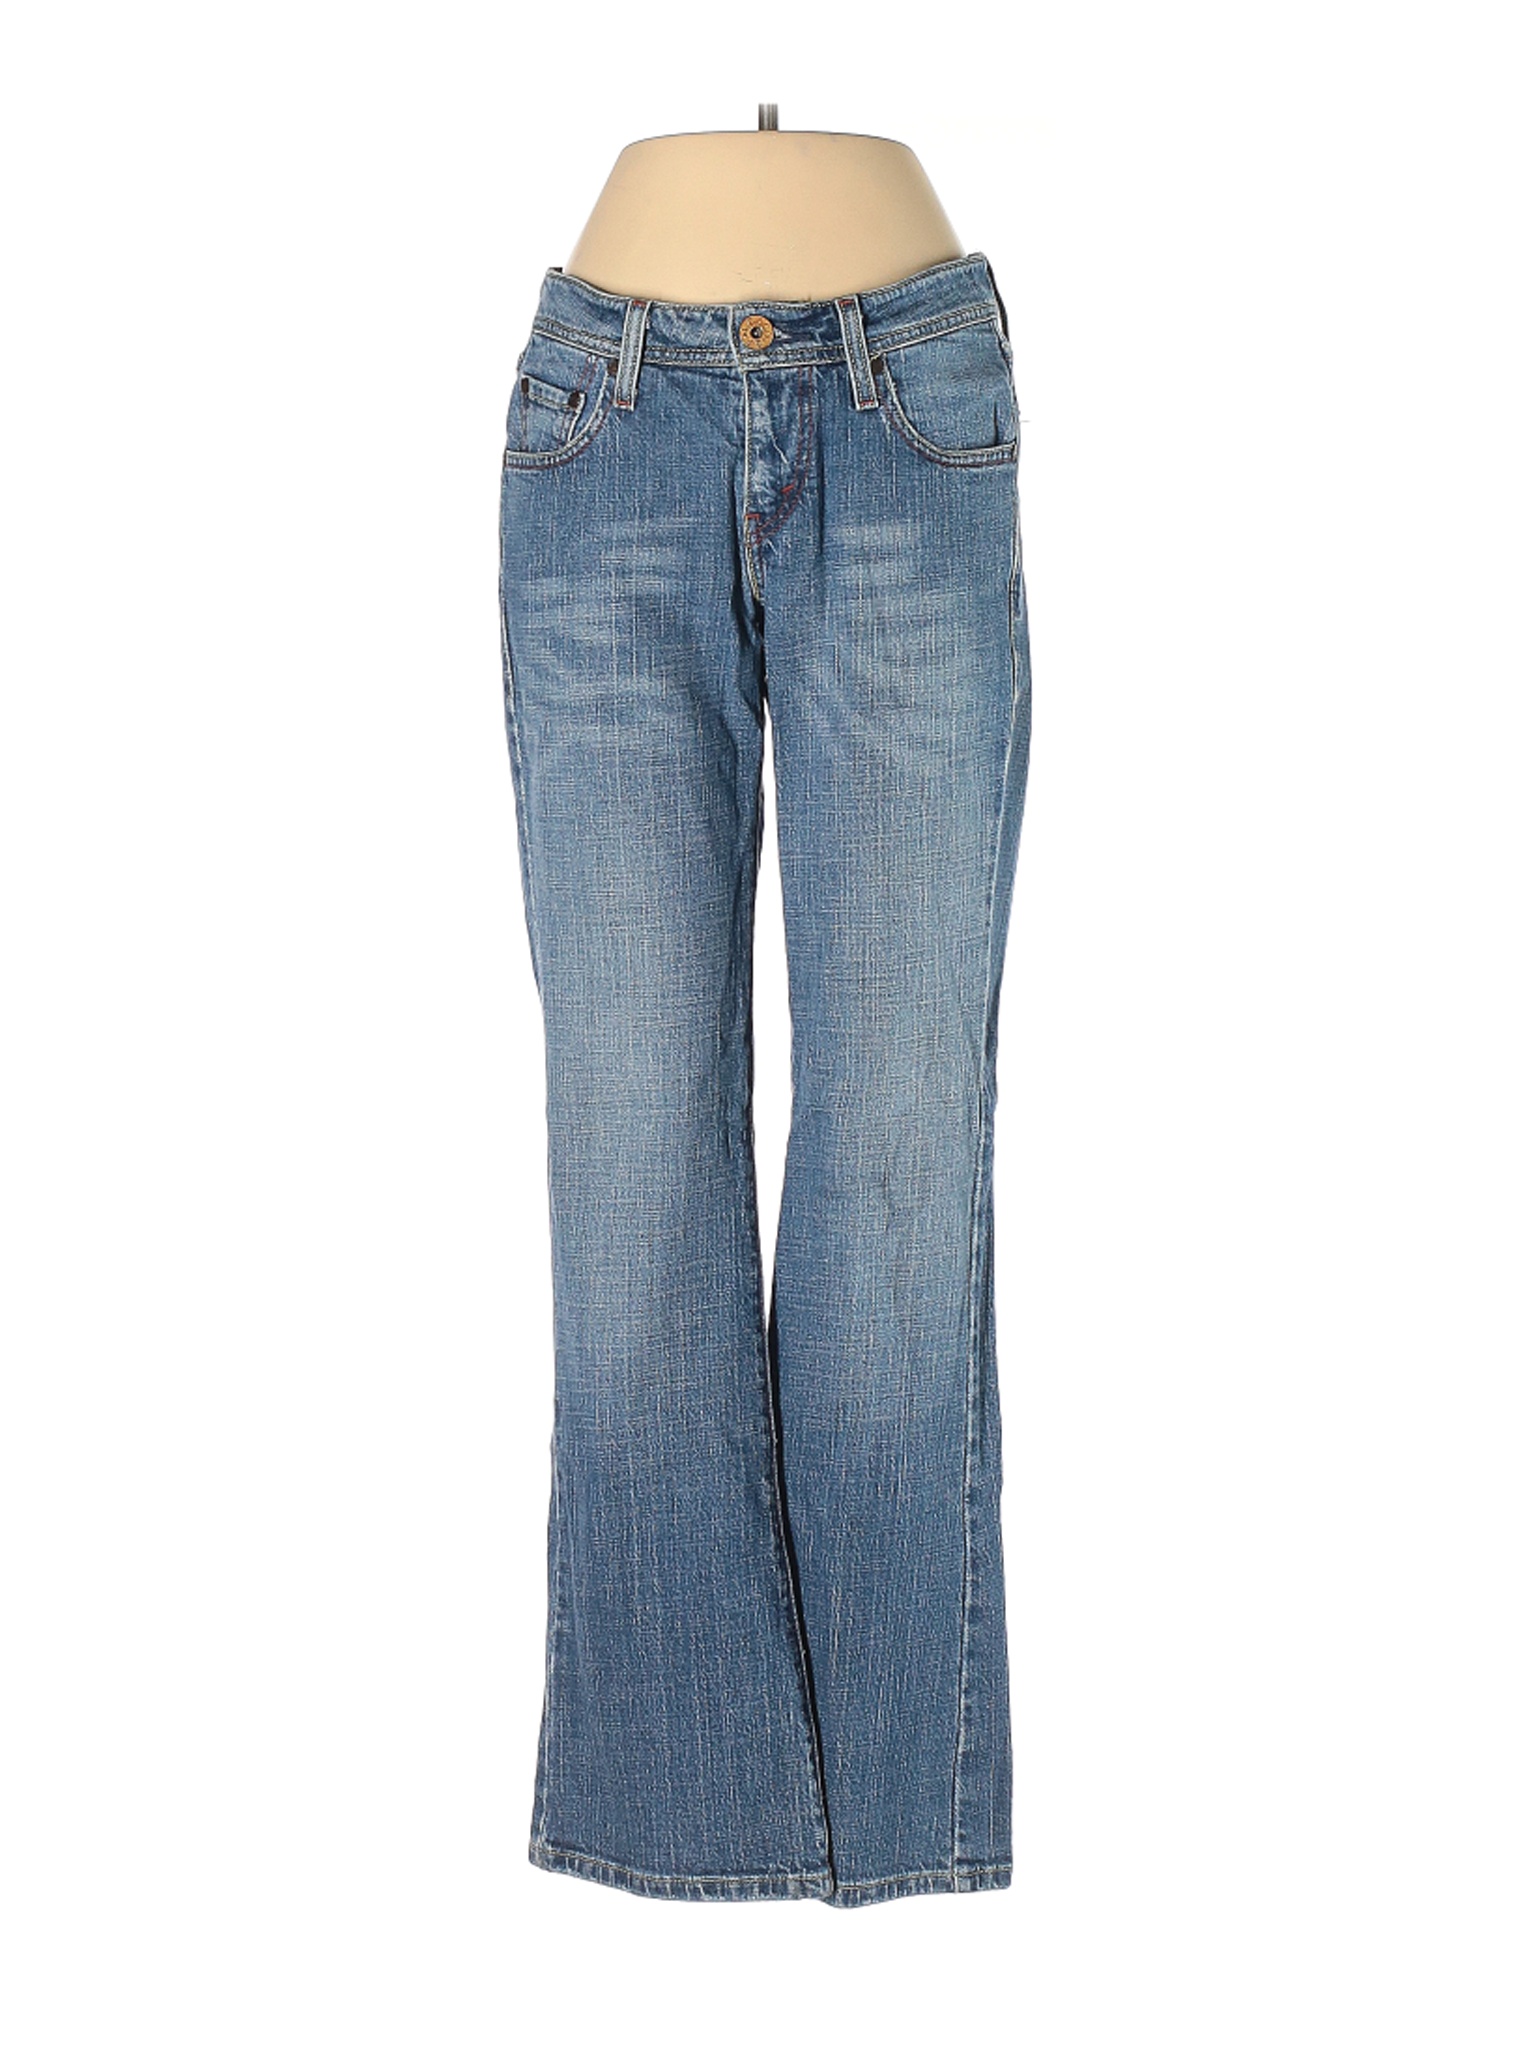 Levi's Women Blue Jeans 5 | eBay